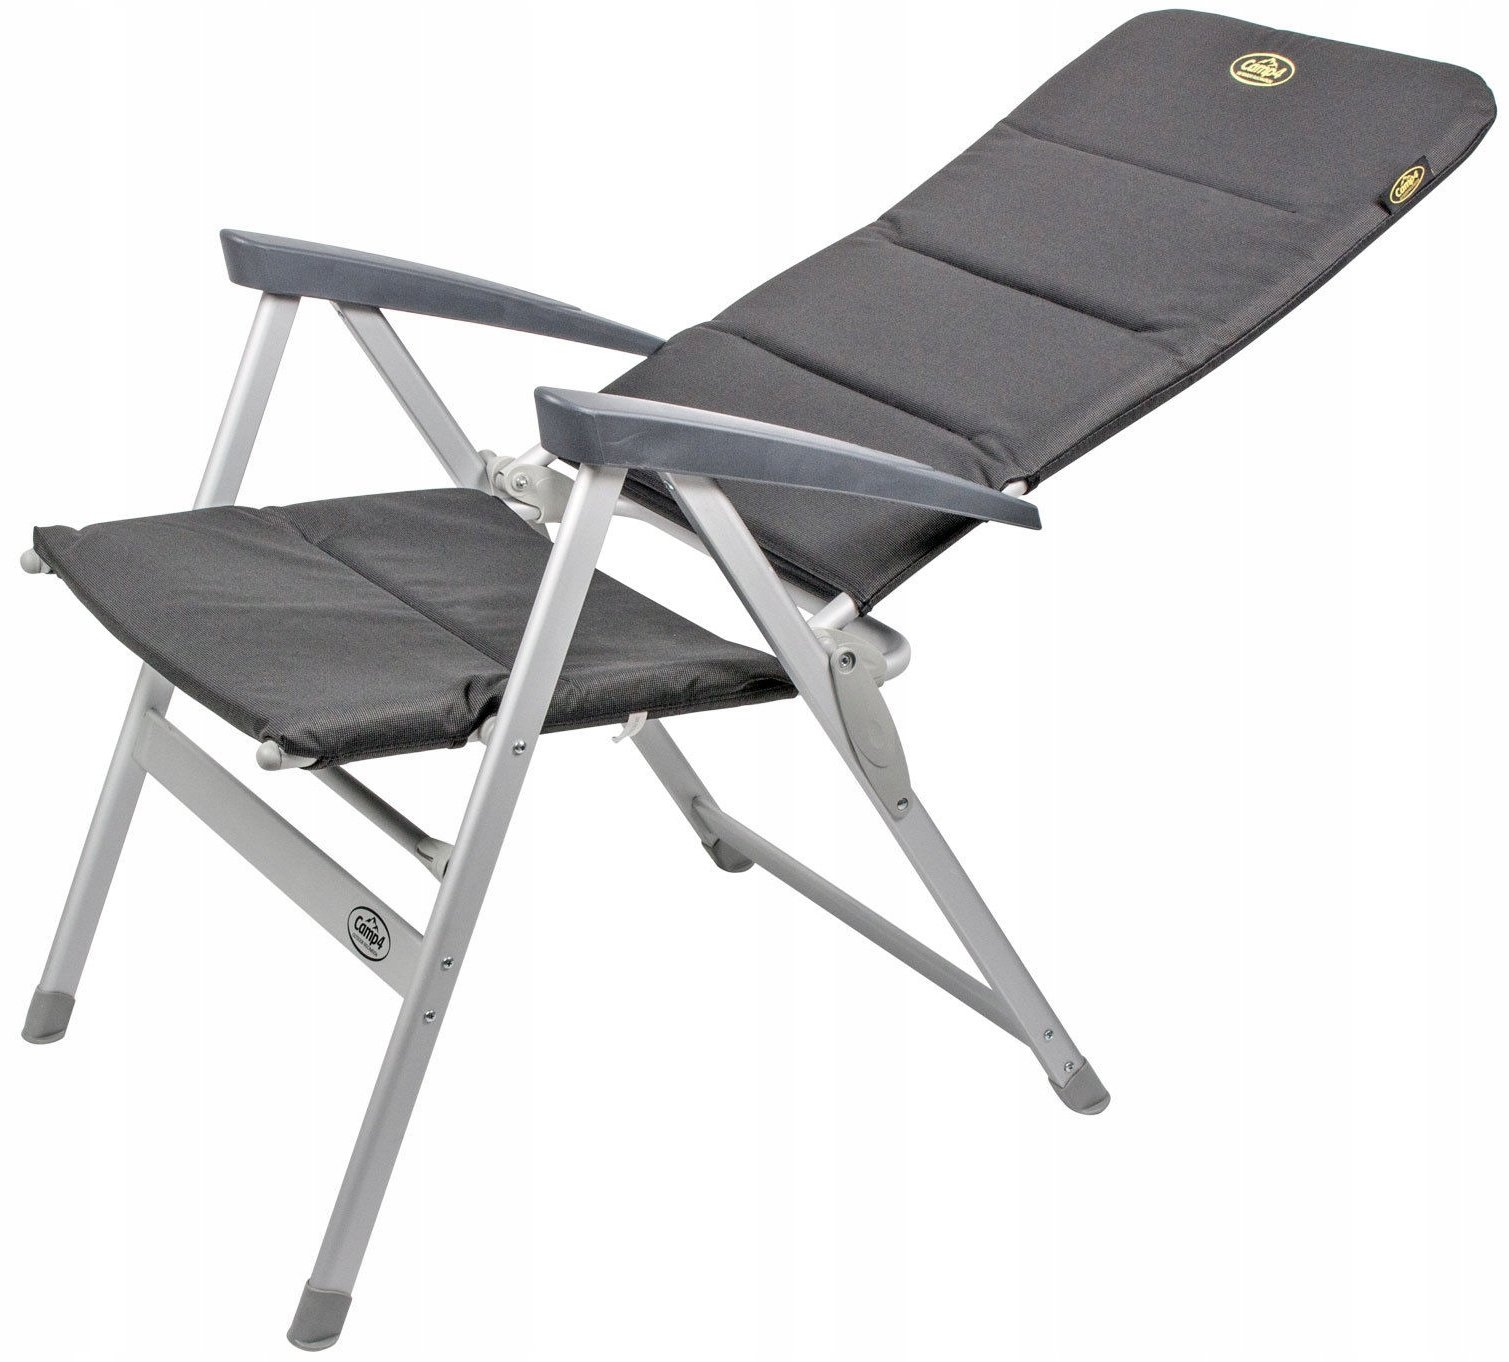 Кресло походное складное. Кресло складное Canadian Camper cc-128. Кресло аутвенчер кемпинговое. PROFICAMP кресло складное туристическое "КС-127". Кемпинговое кресло Outventure Camping Chair.